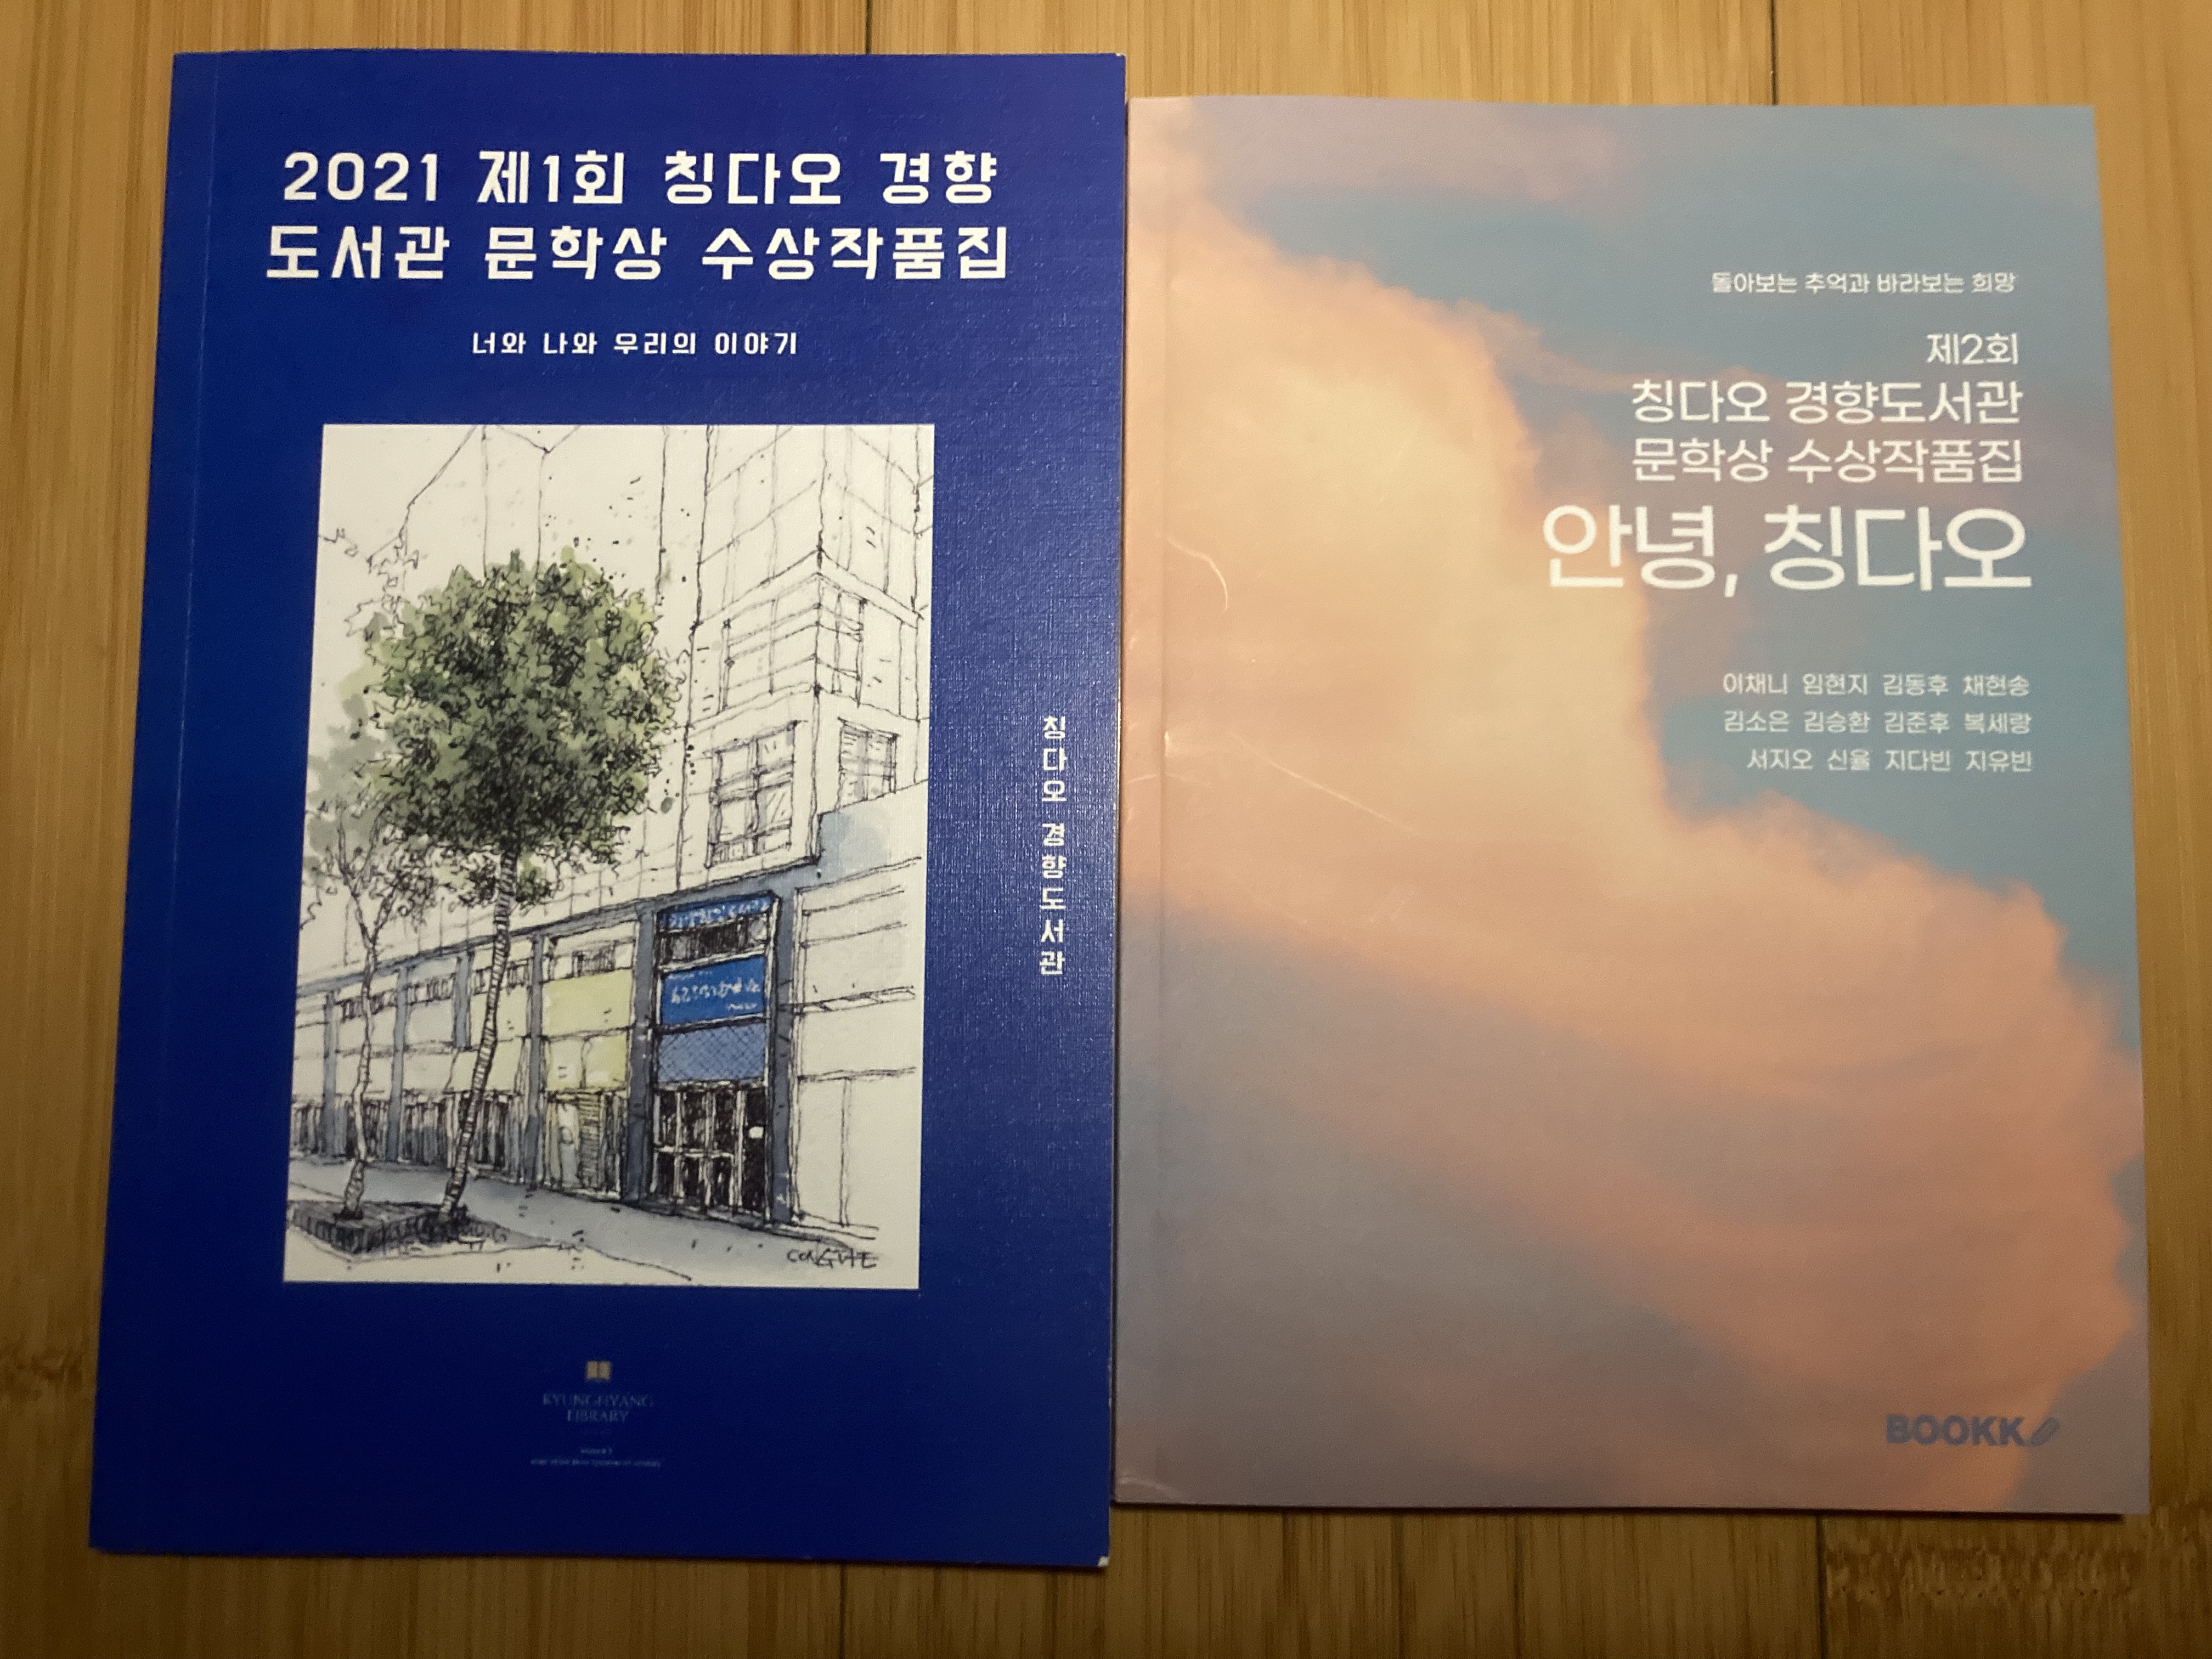 2021 и 2022 годы «Литературные награды библиотеки Кёнхян»